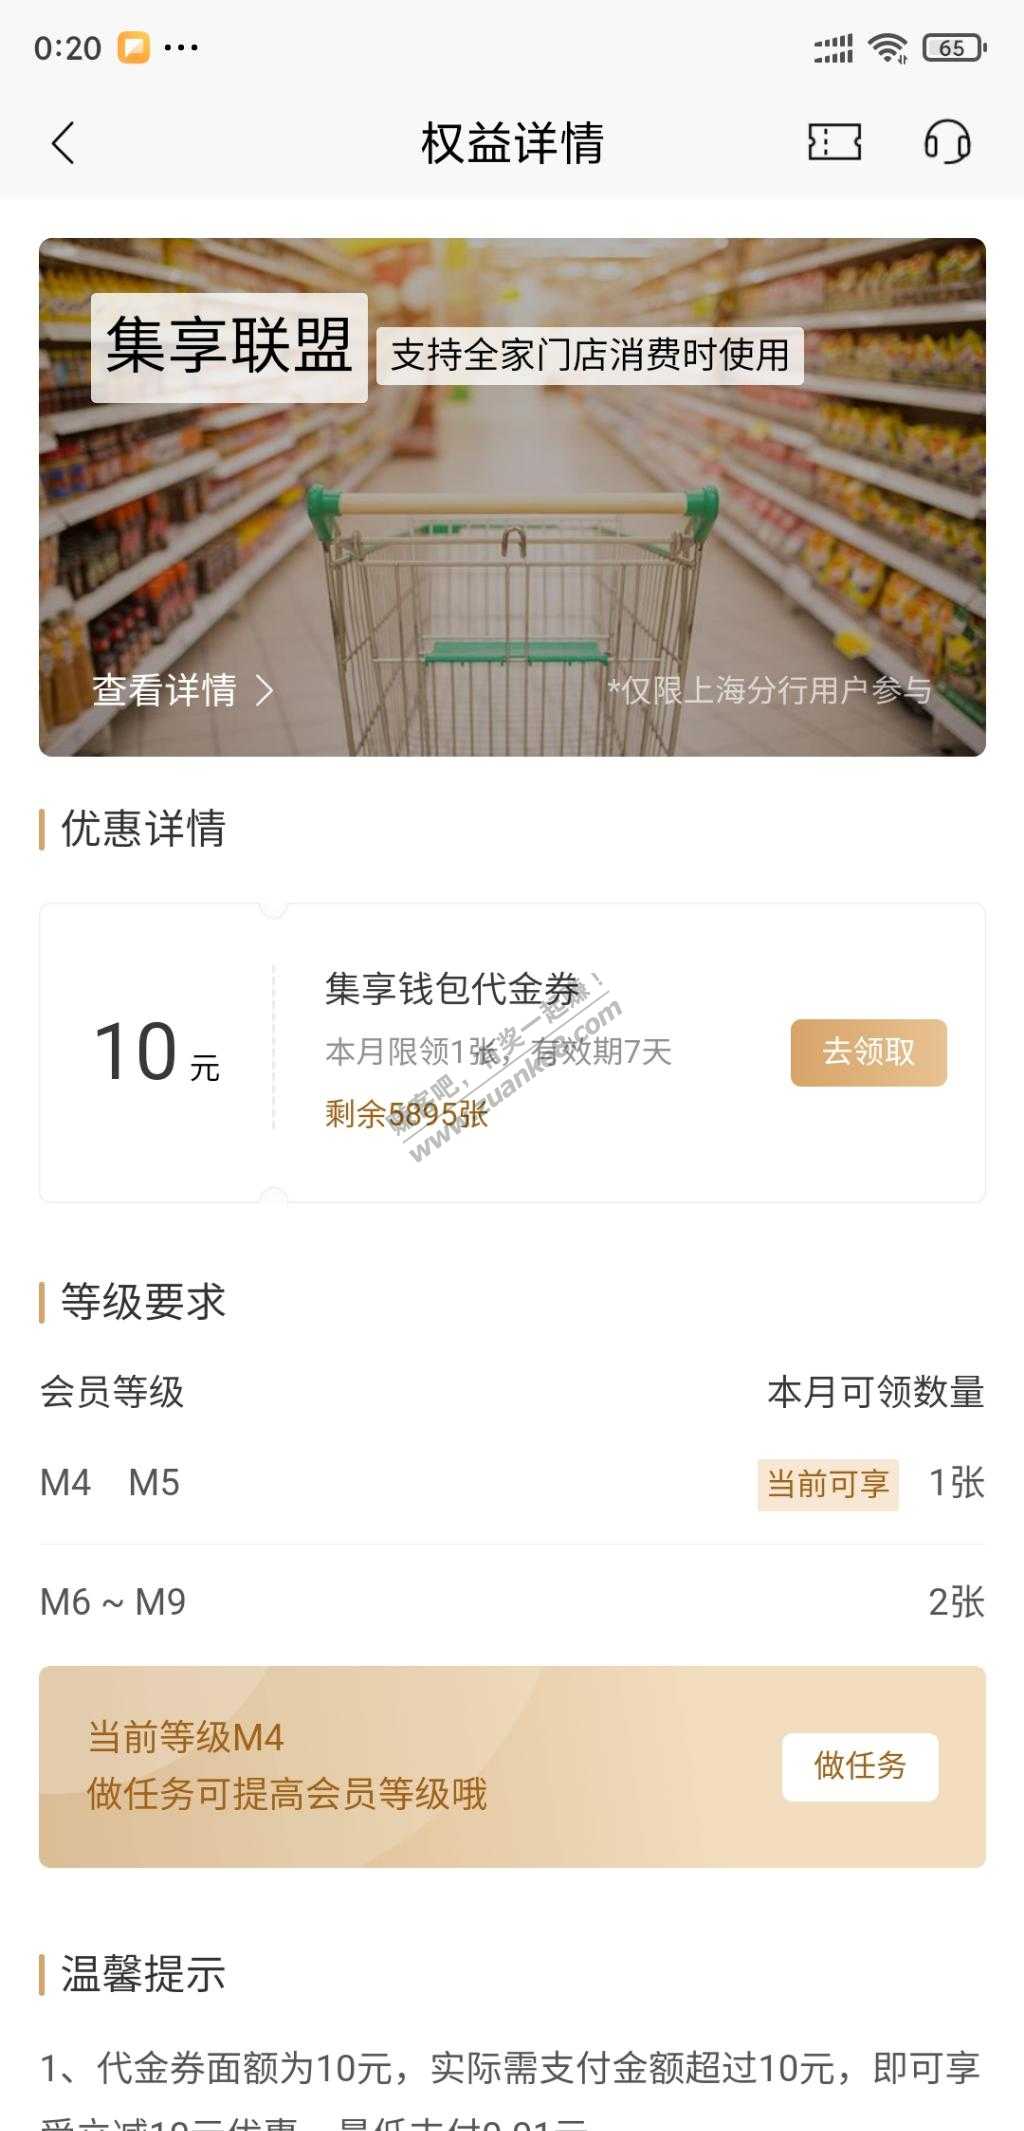 招商app-上海地区-等级m4-领全家10代金券-惠小助(52huixz.com)